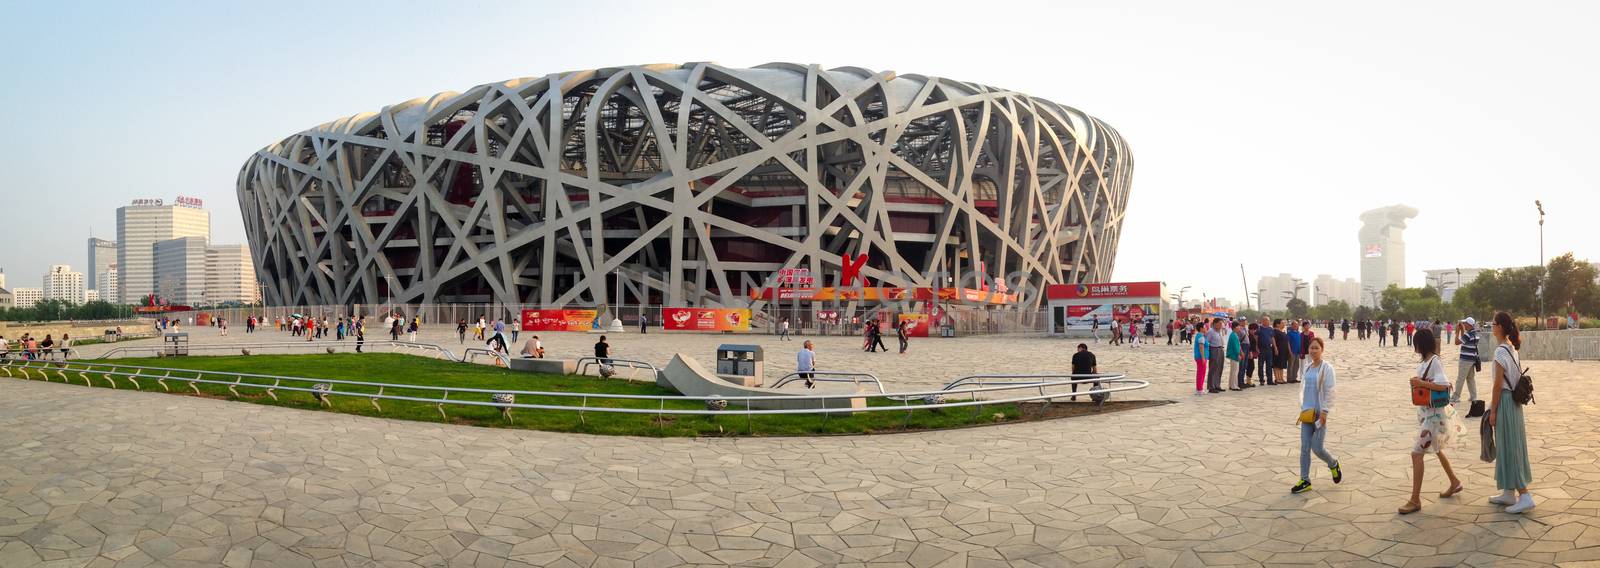 BEIJING, CHINA - SEPTEMBER 21, 2015: Tourists walking around the Bird Nets - China Natinal Olympic Stadium in Beijing, China, September 21, 2015